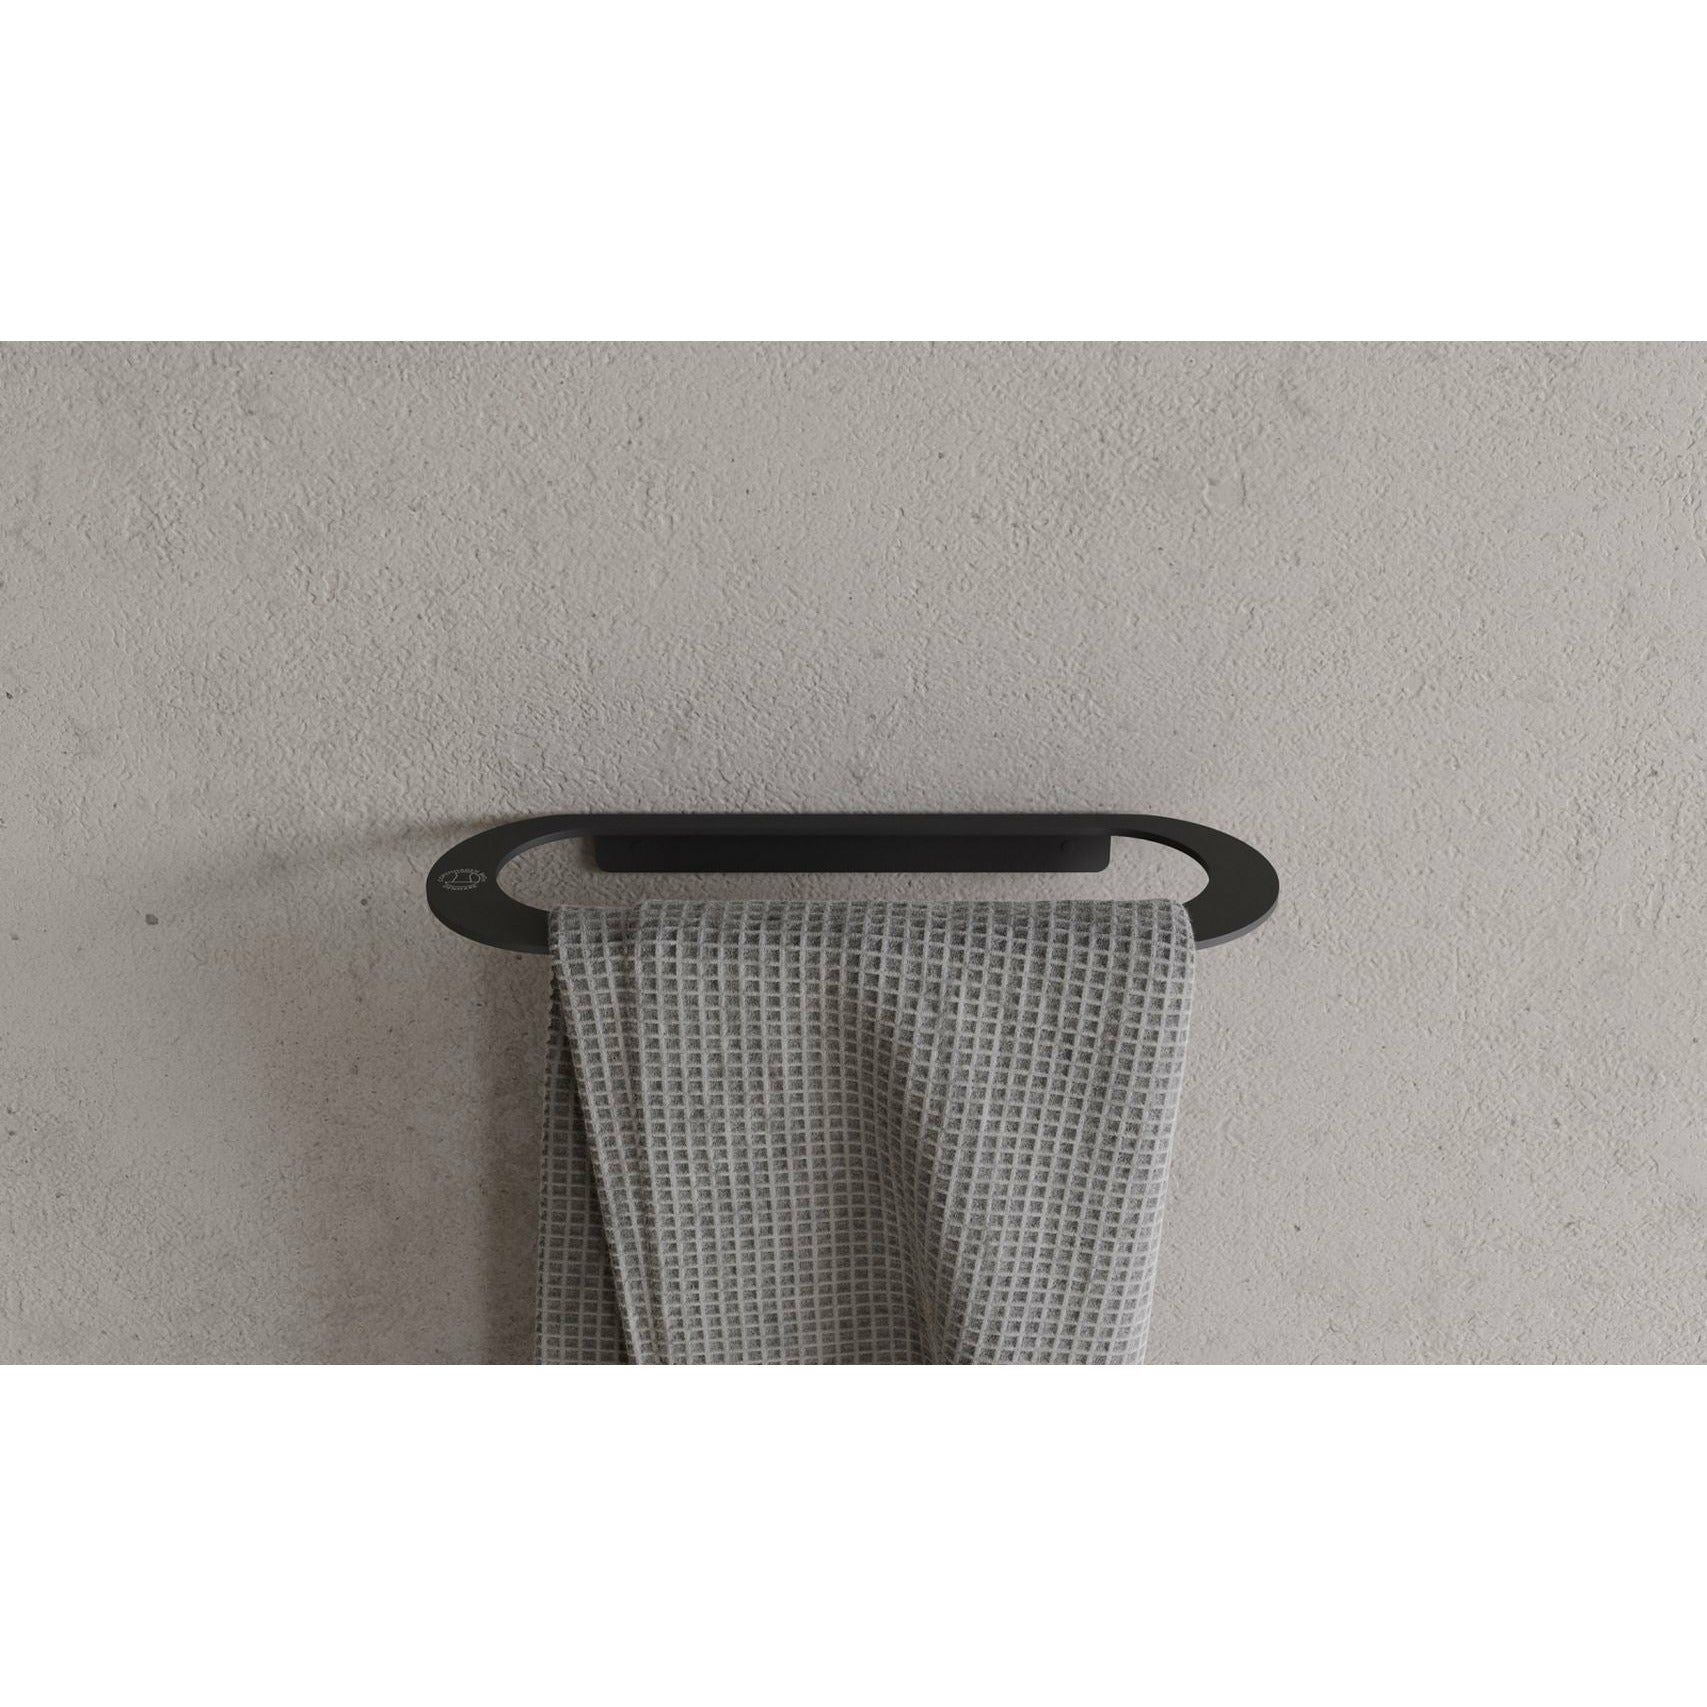 Köpenhamn bad CB 100 handdukshållare L28 cm, matta svart